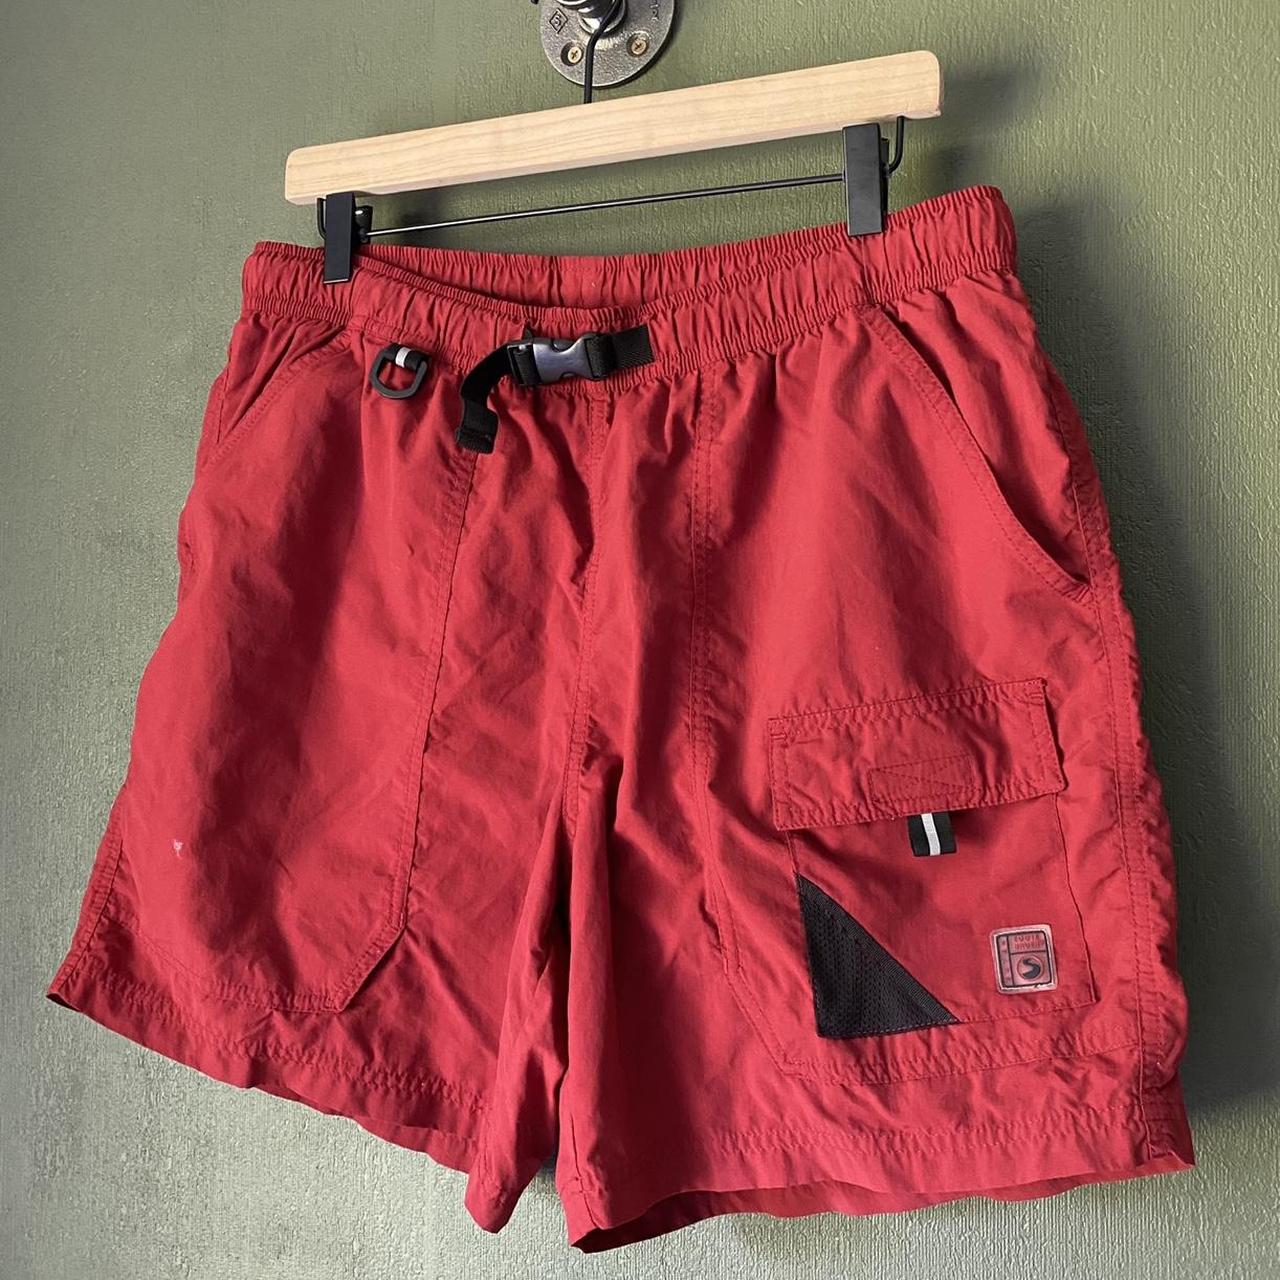 Eddie Bauer Men's Red and Burgundy Shorts | Depop